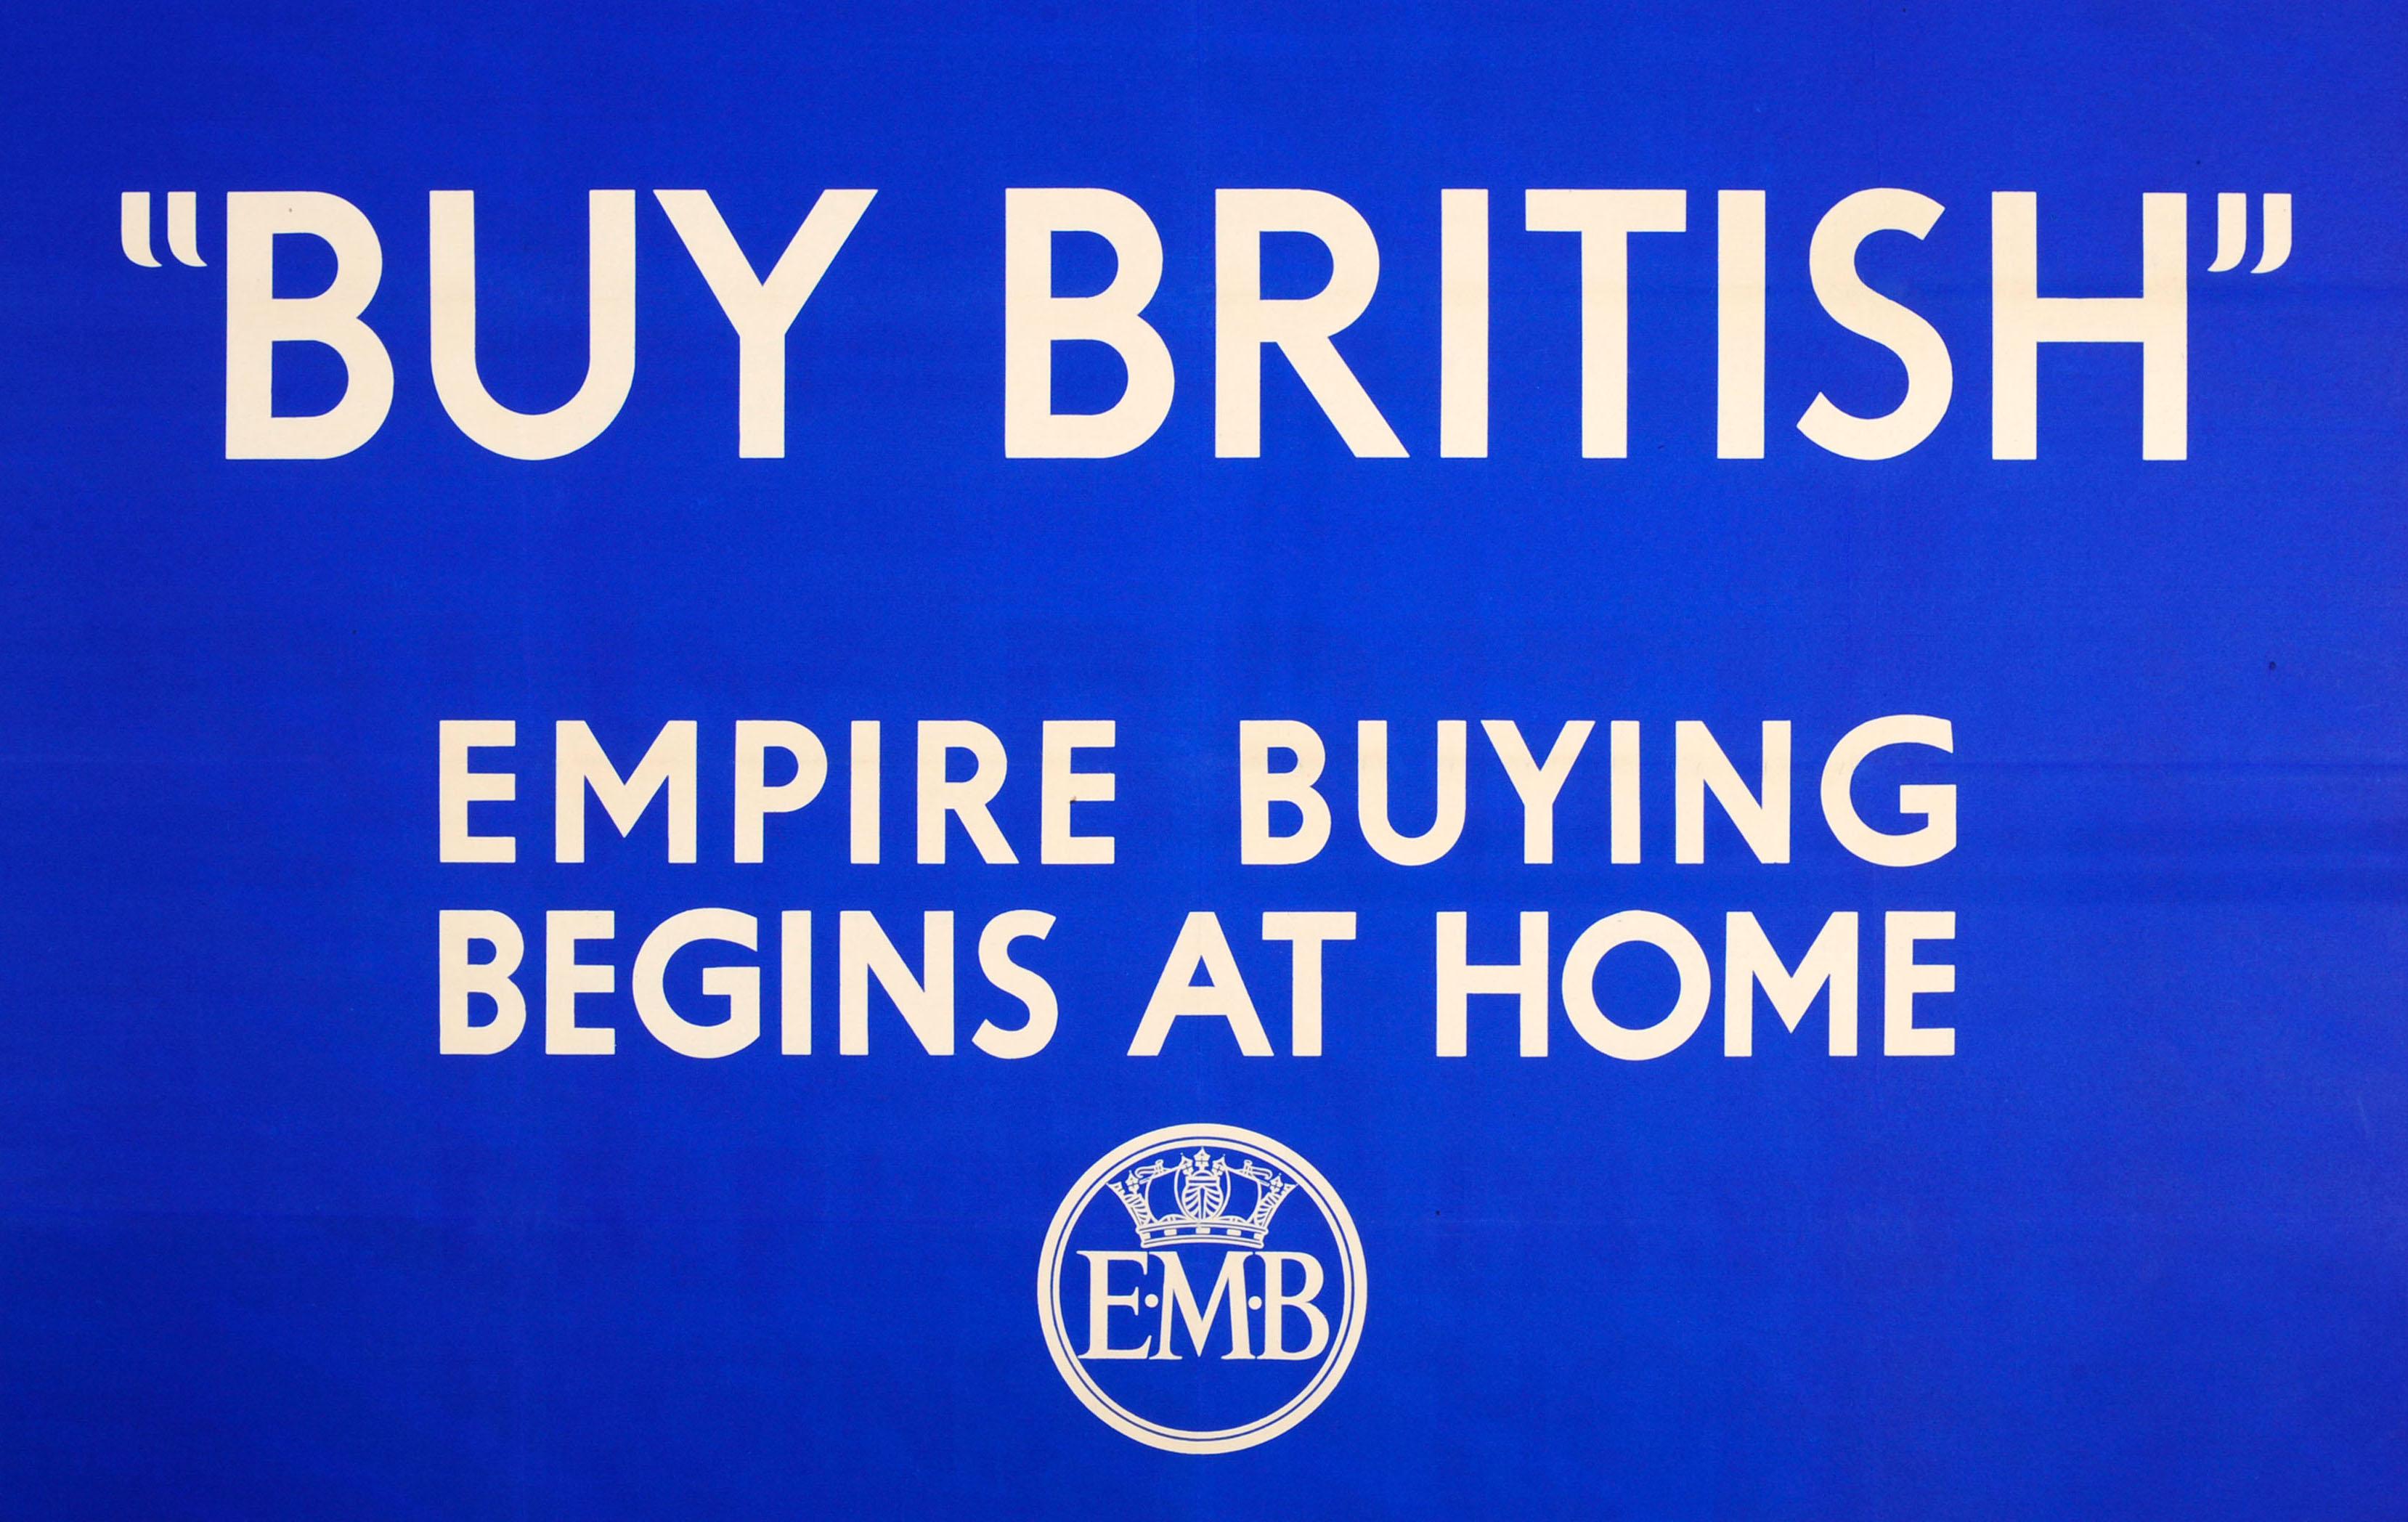 Originales Vintage-Werbeplakat des Empire Marketing Board - Buy British Empire Buying Begins At Home - mit einem ikonischen, einfachen Design im Stil von Keep Calm and Carry On mit weißem Text auf blauem Hintergrund und dem EMB-Kronenlogo darunter.